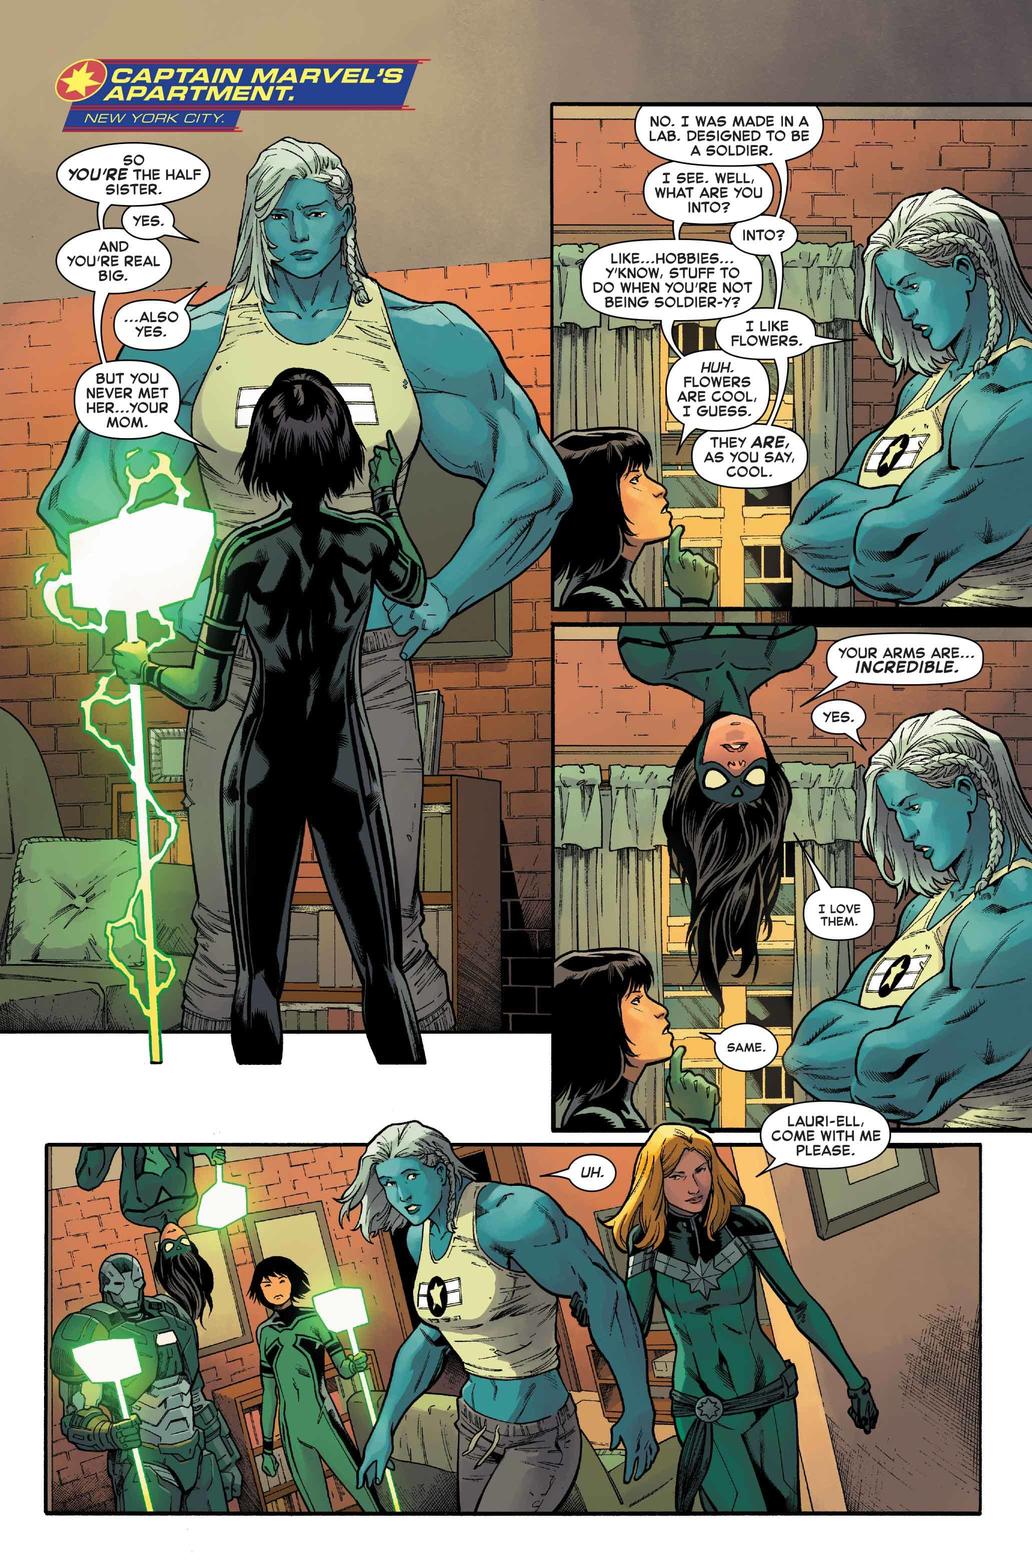 Conheça Lauri-ell, a recém-revelada meia-irmã da Capitã Marvel.